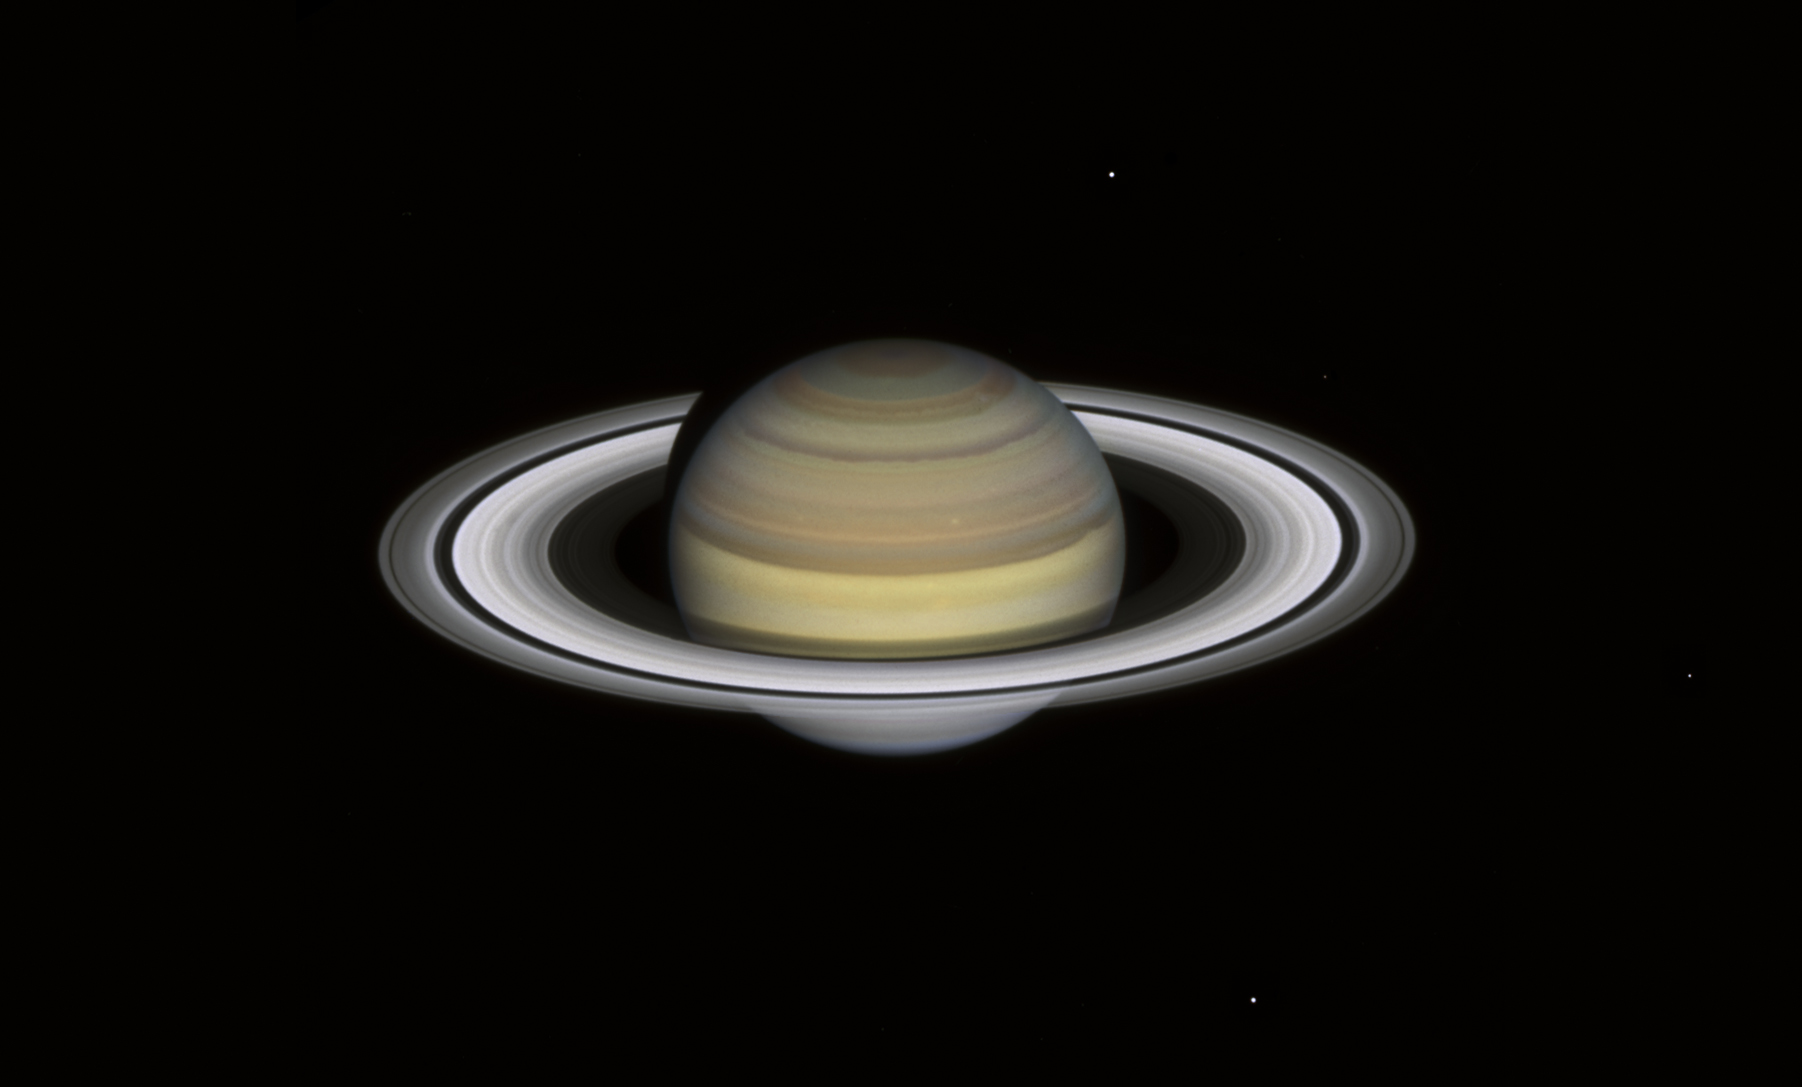 Pierścienie Saturna wkrótce znikną. Obserwujmy je, póki mamy okazję